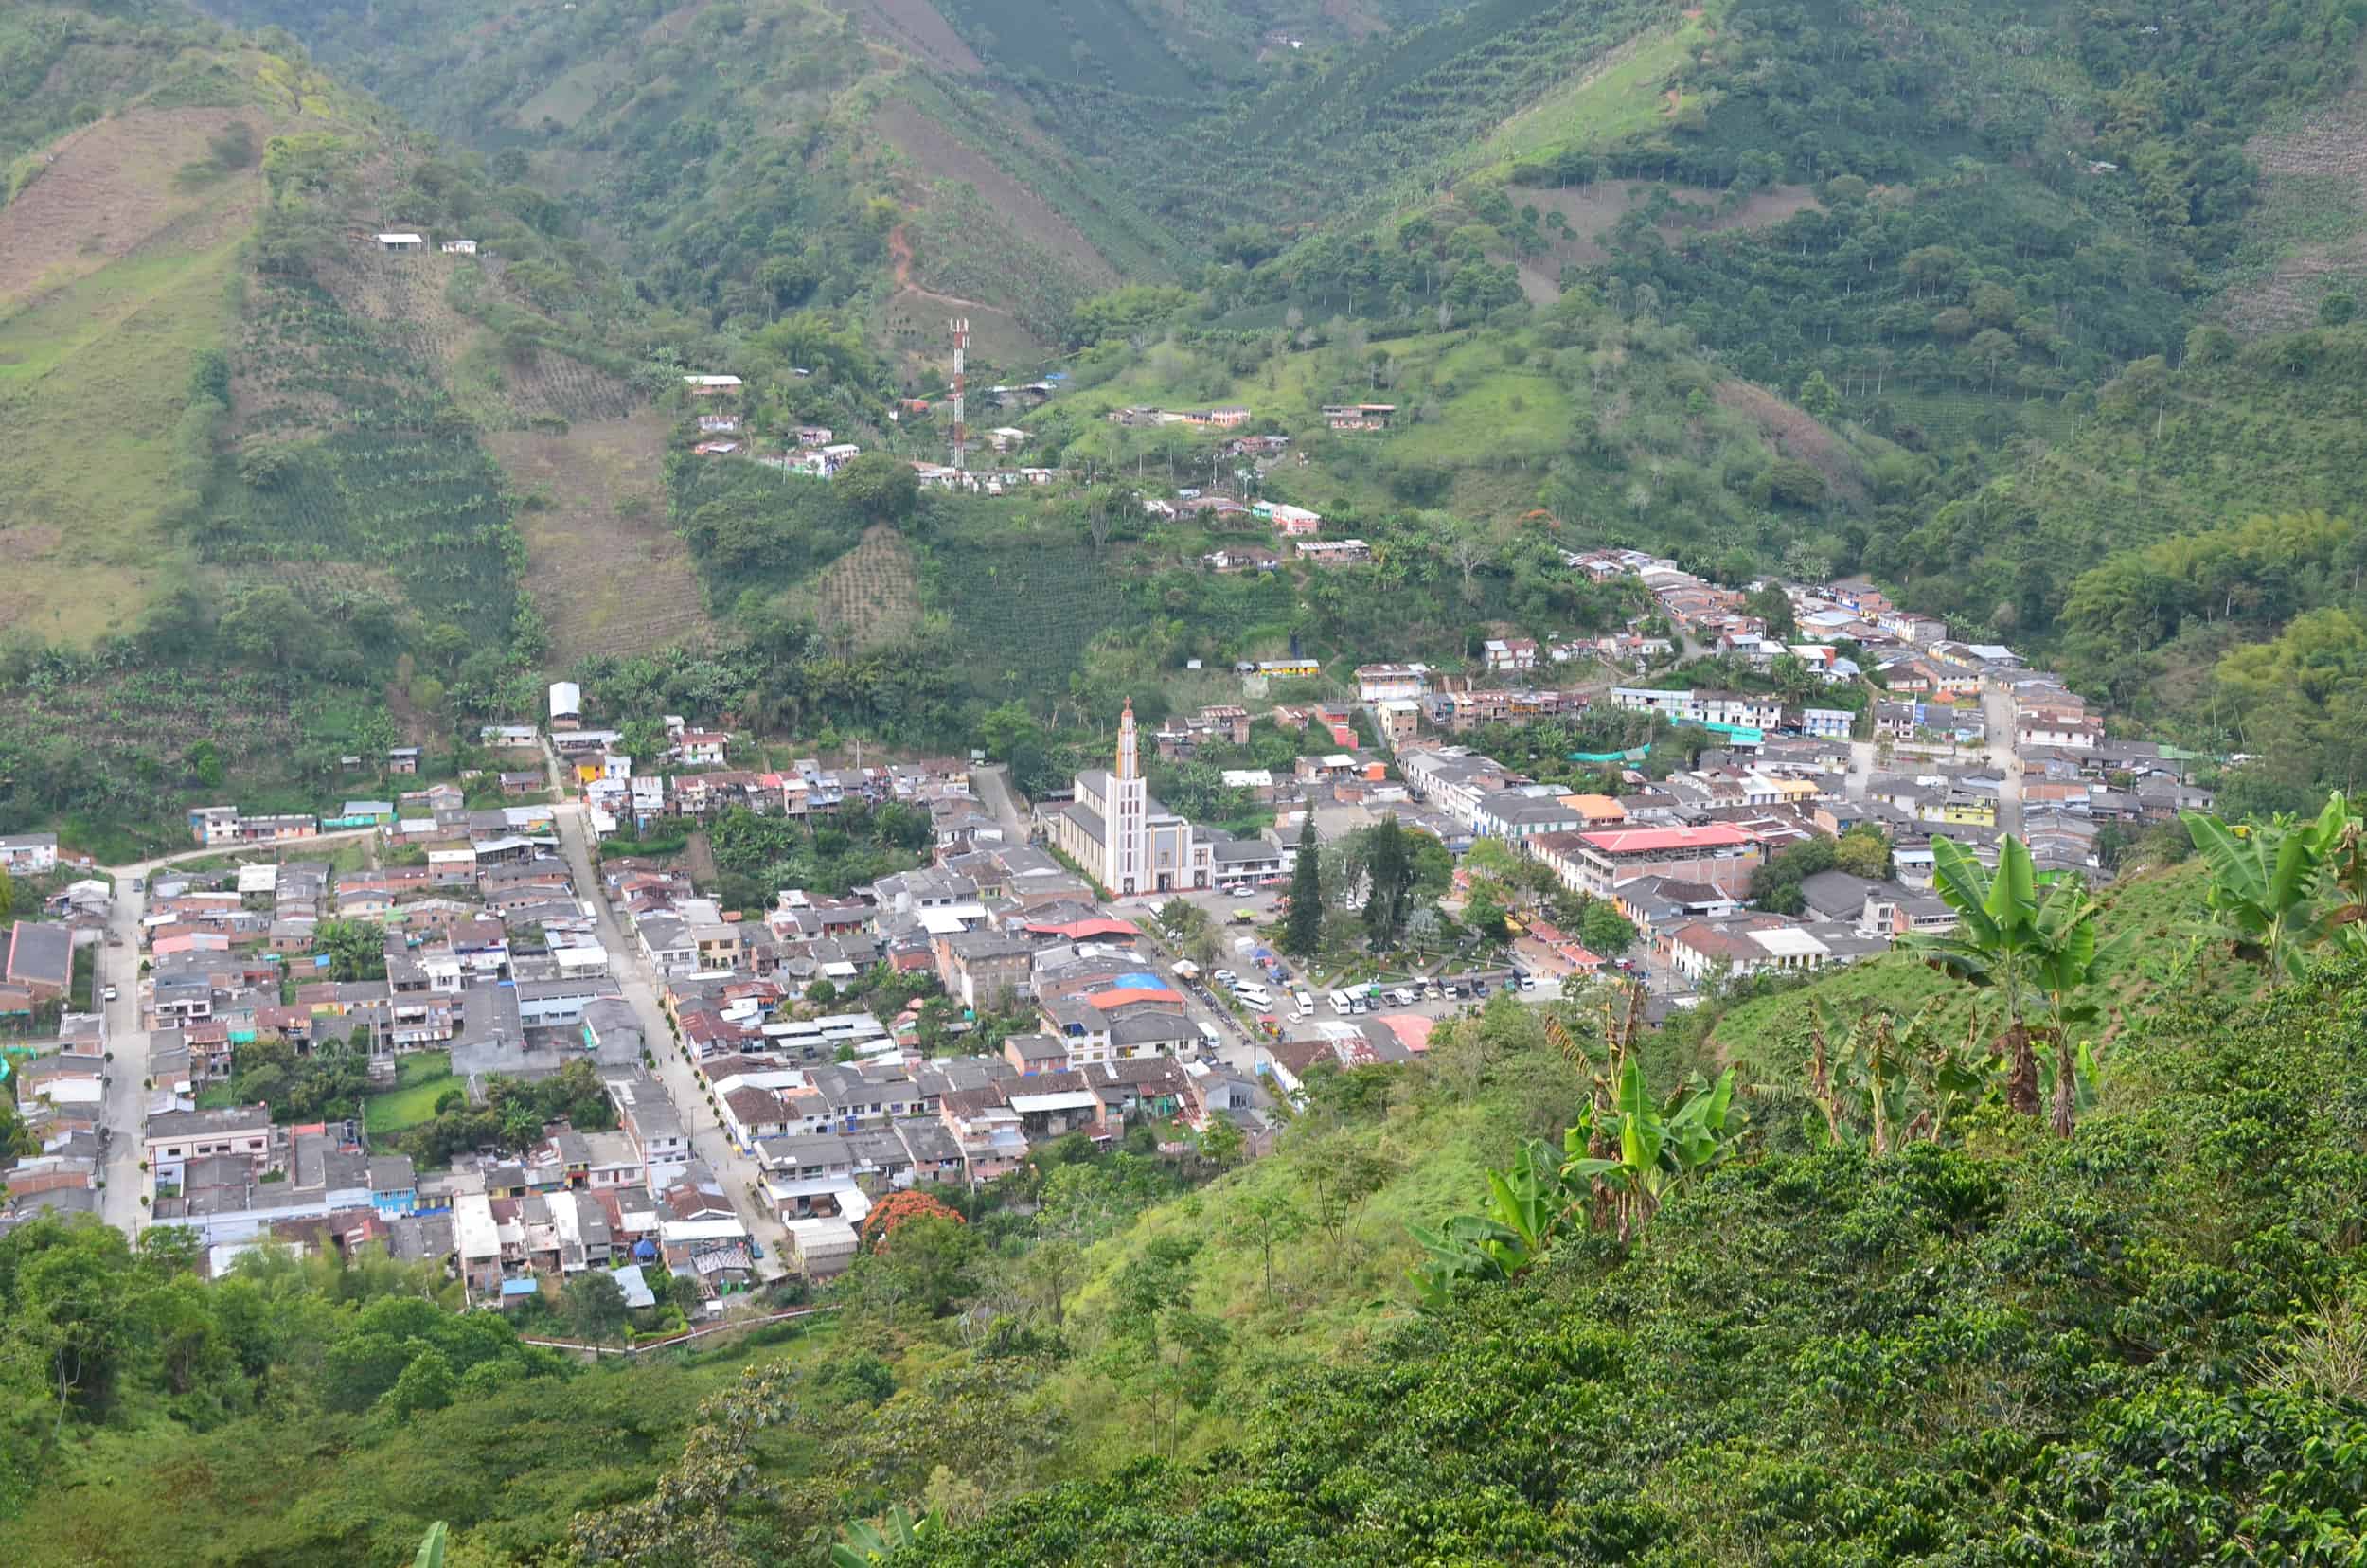 View of La Celia